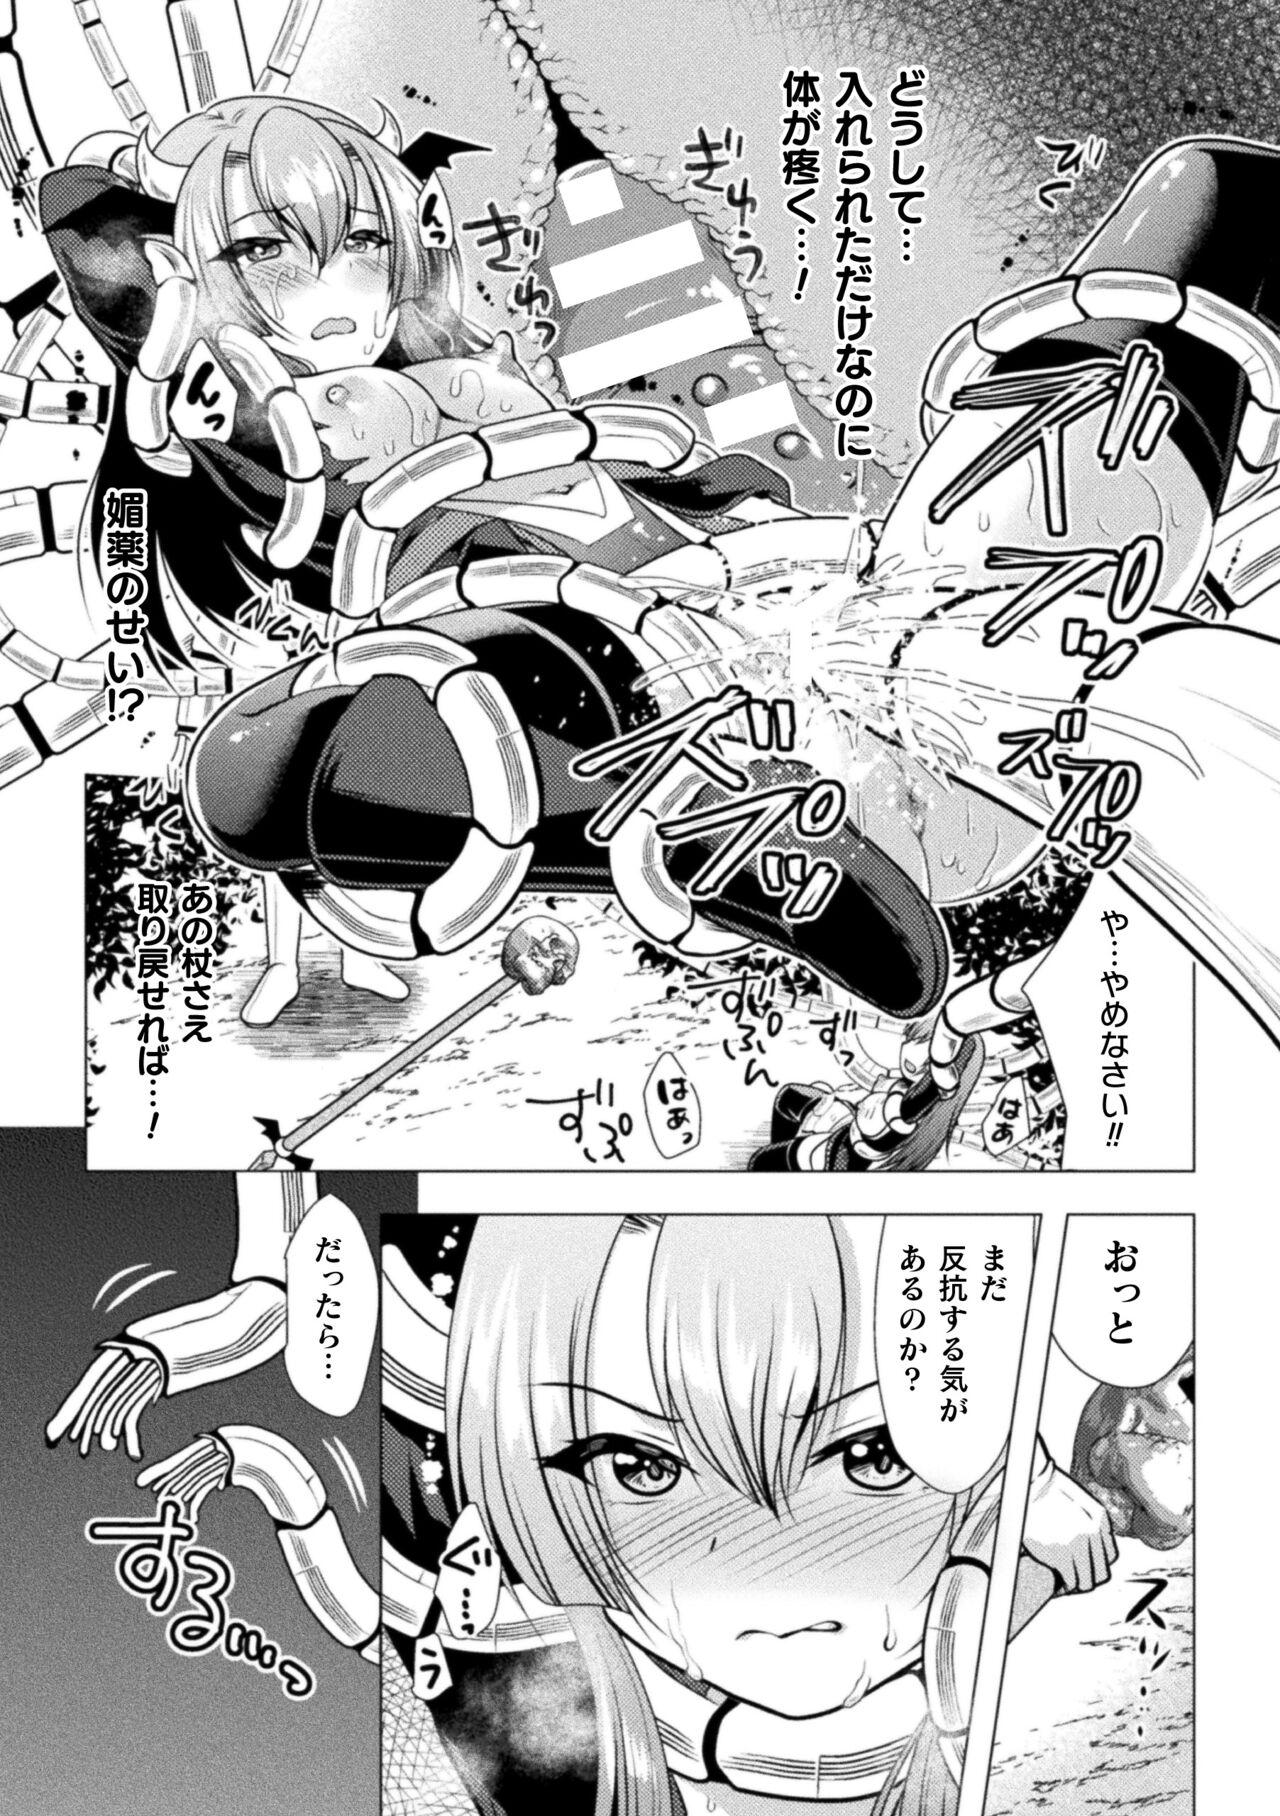 2D Comic Magazine Mesugaki Henshin Heroine Kikaikan Seisai Hijou no Wakarase Machine de Renzoku Loli Acme Vol. 3 14